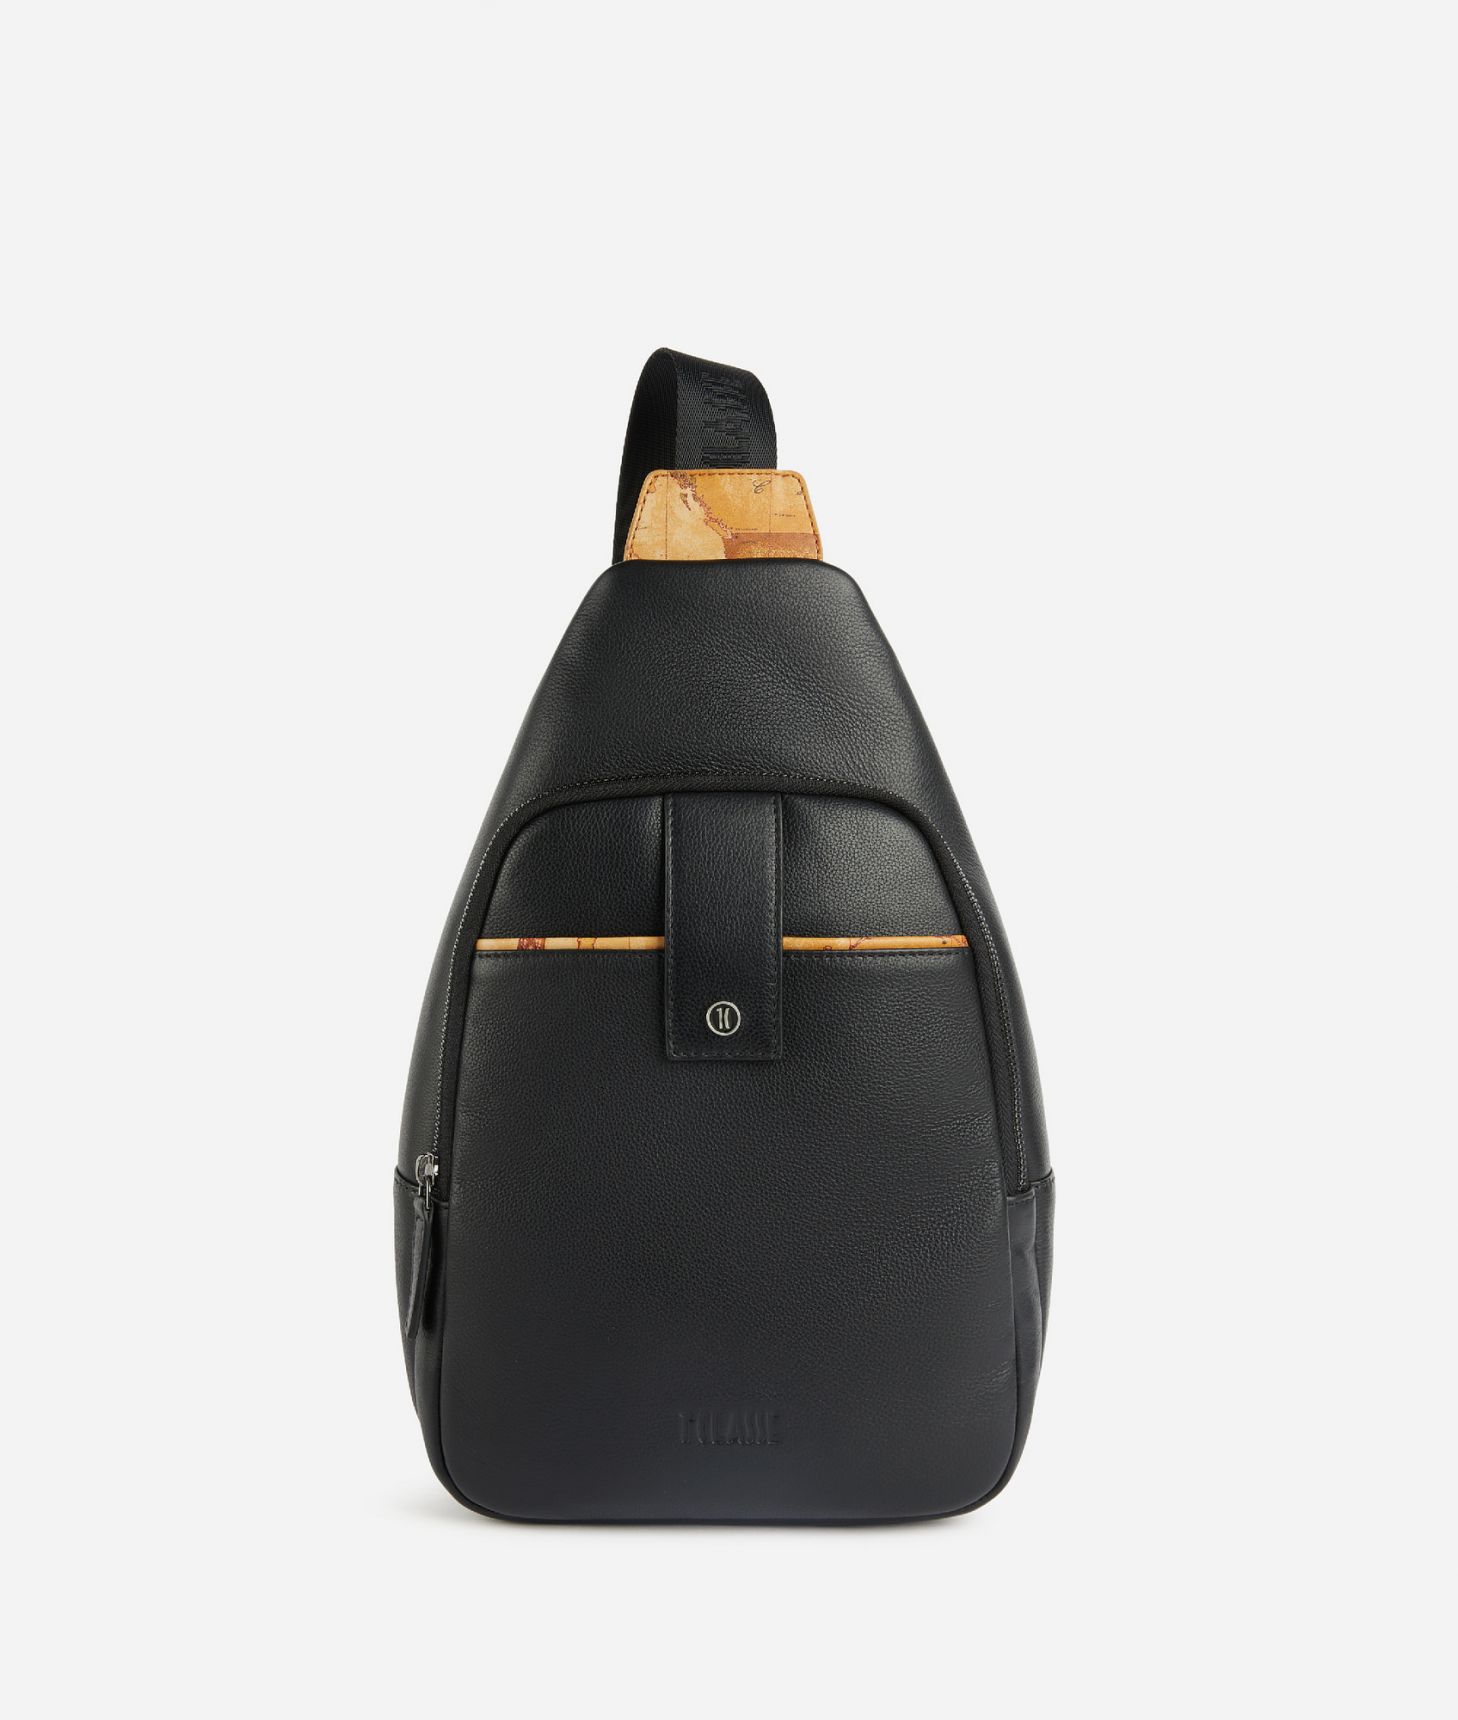 Leather one-shoulder backpack Black,front